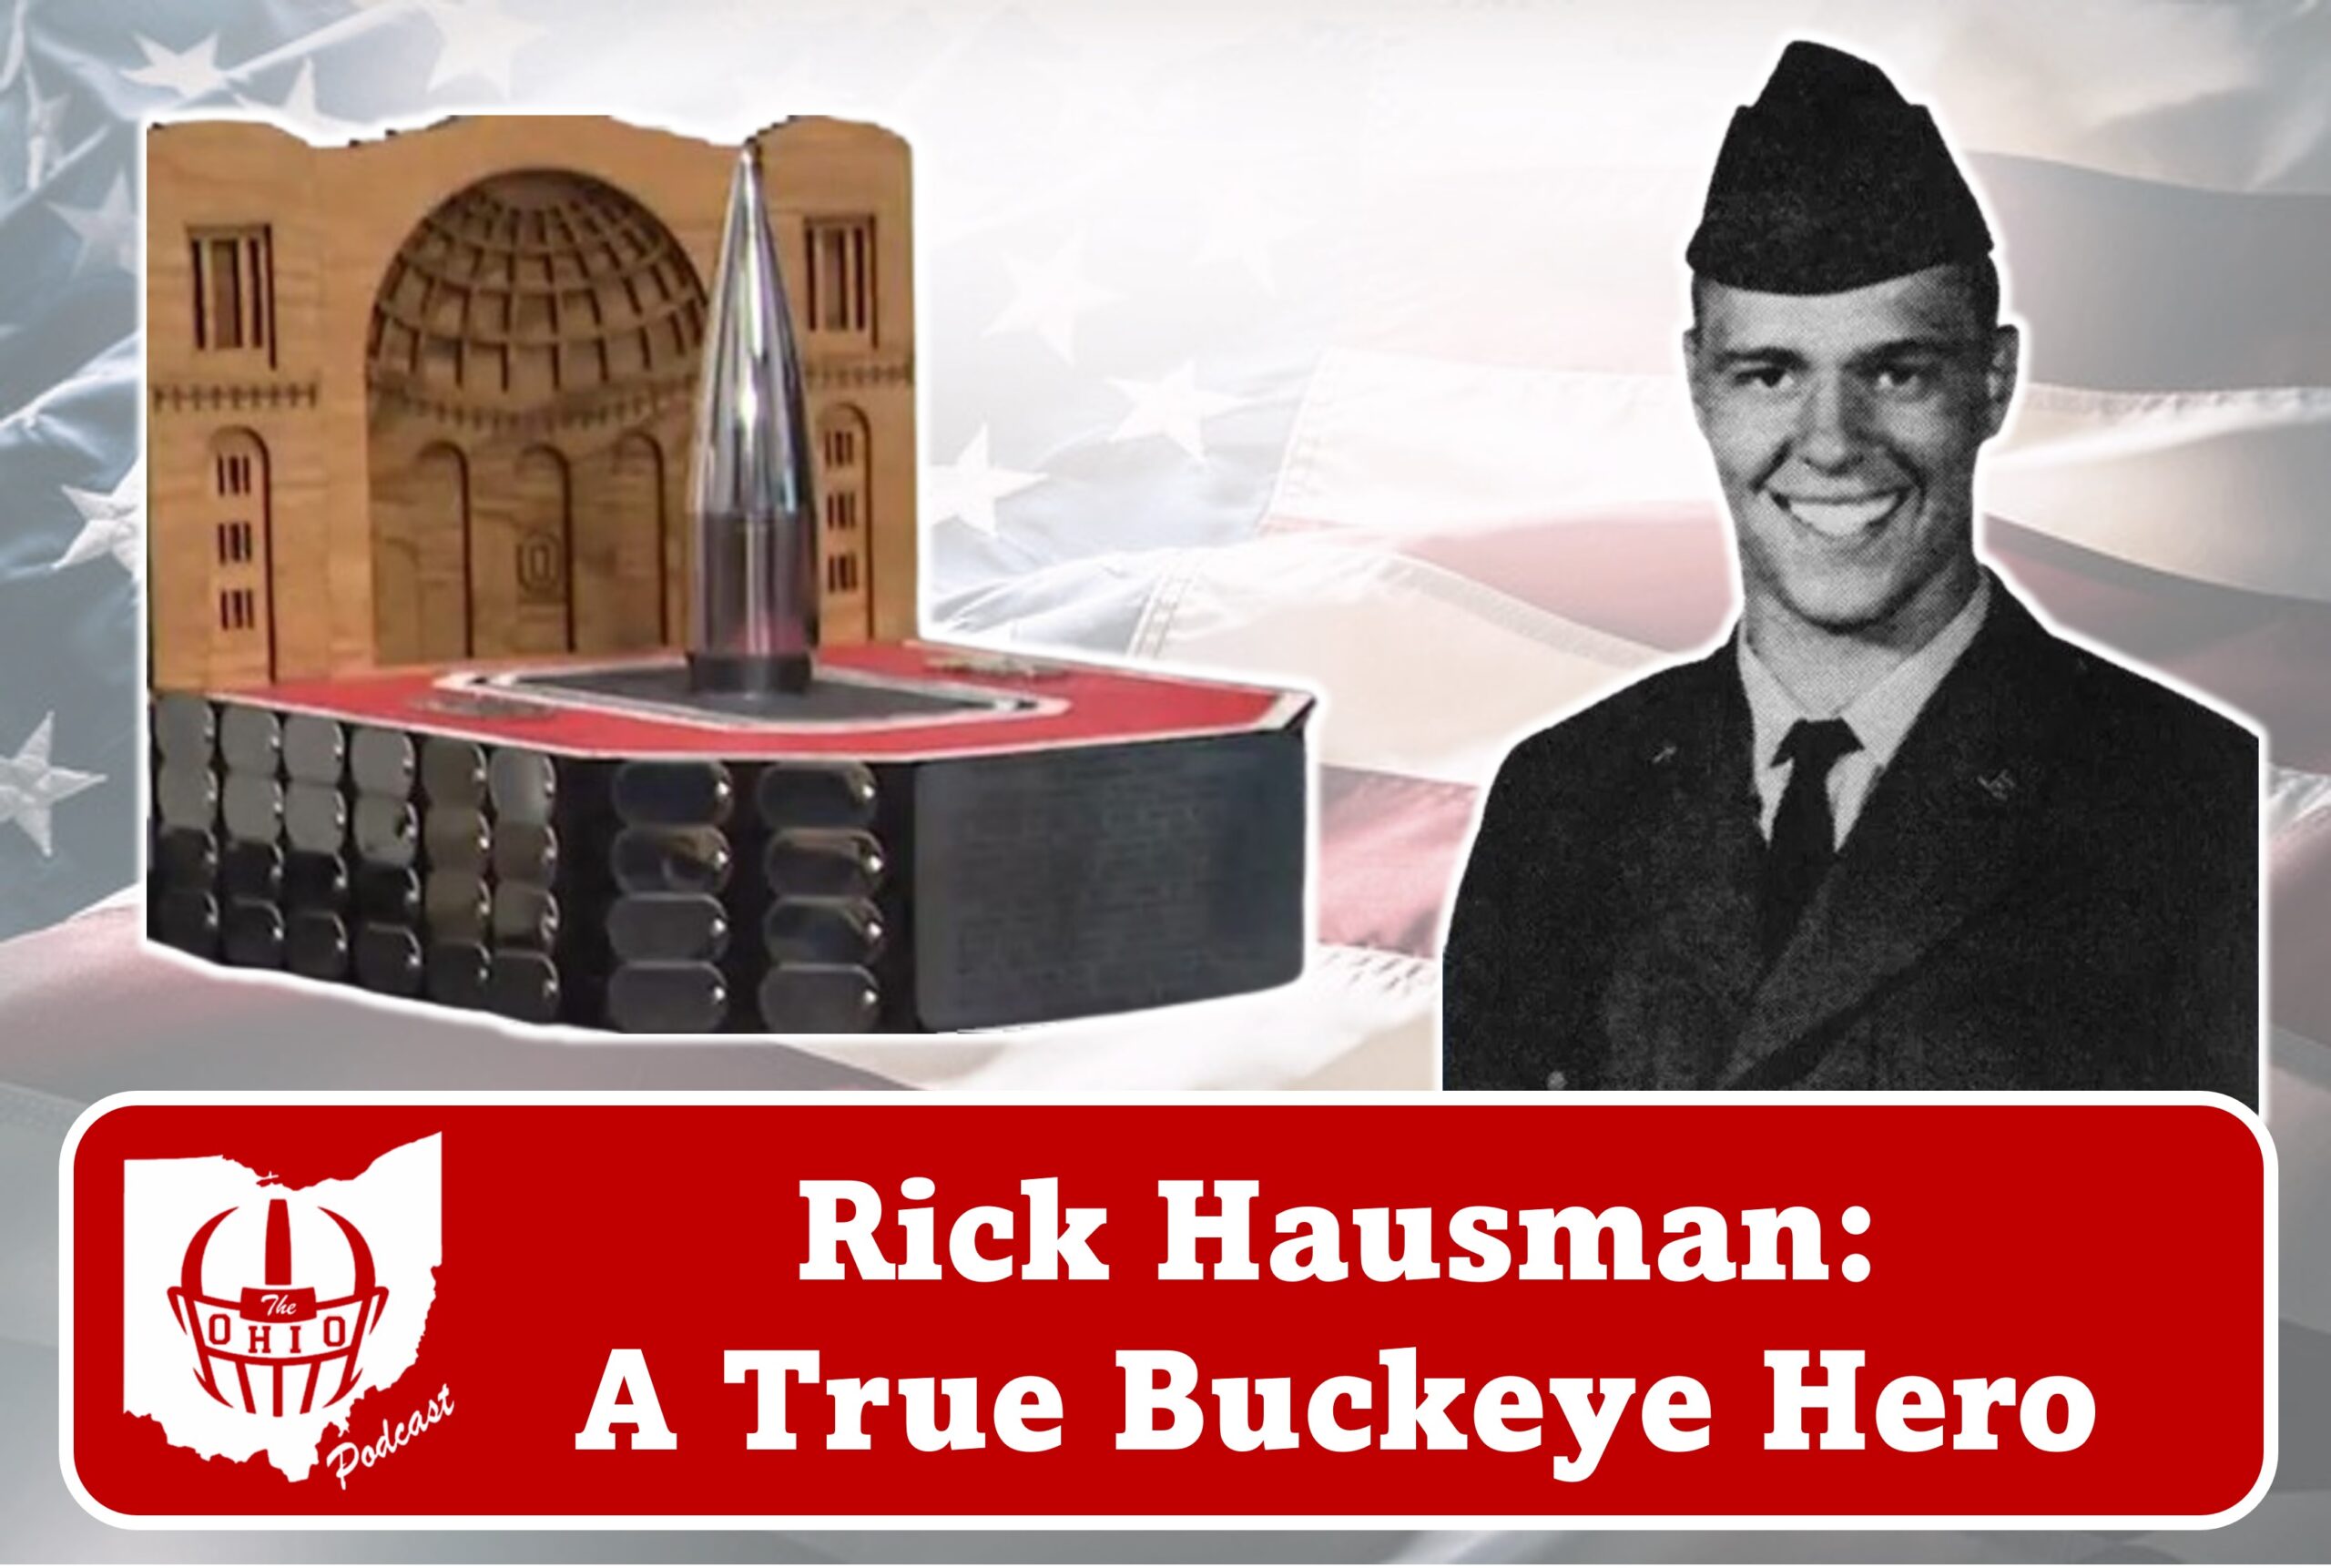 Rick Hausman A True Buckeye Hero